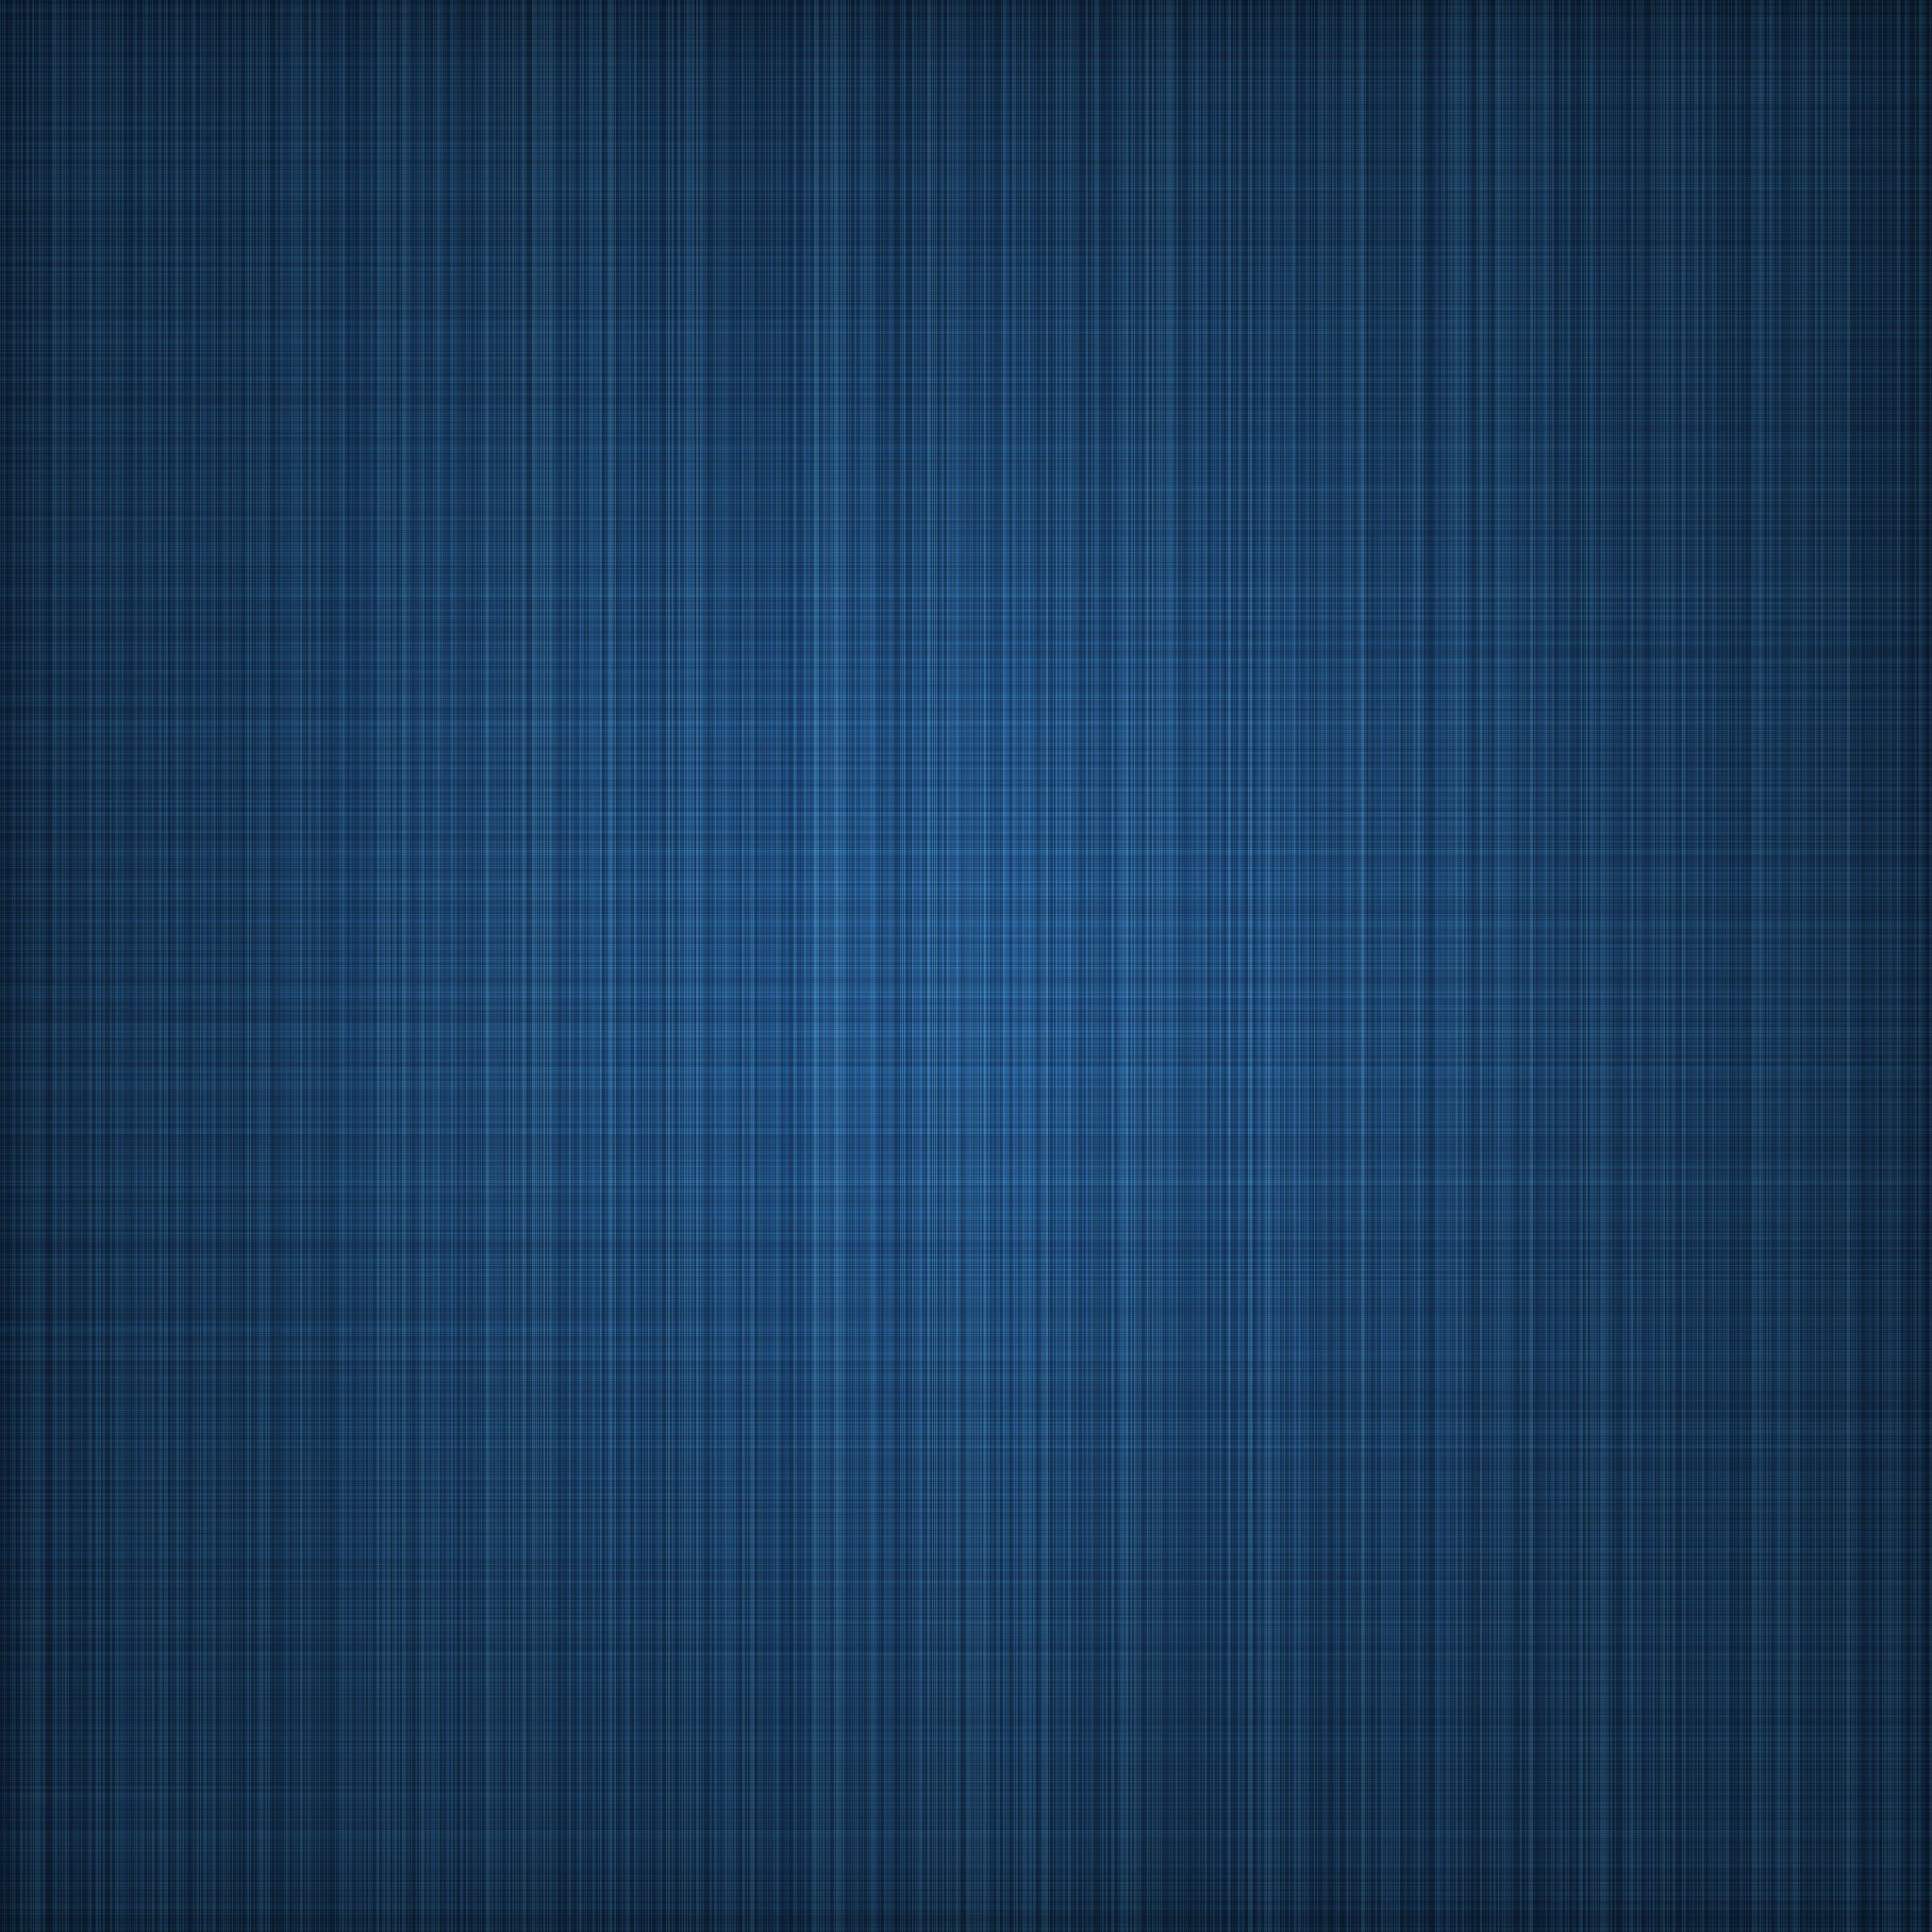 ipad proの壁紙,青い,パターン,ターコイズ,アクア,チェック柄